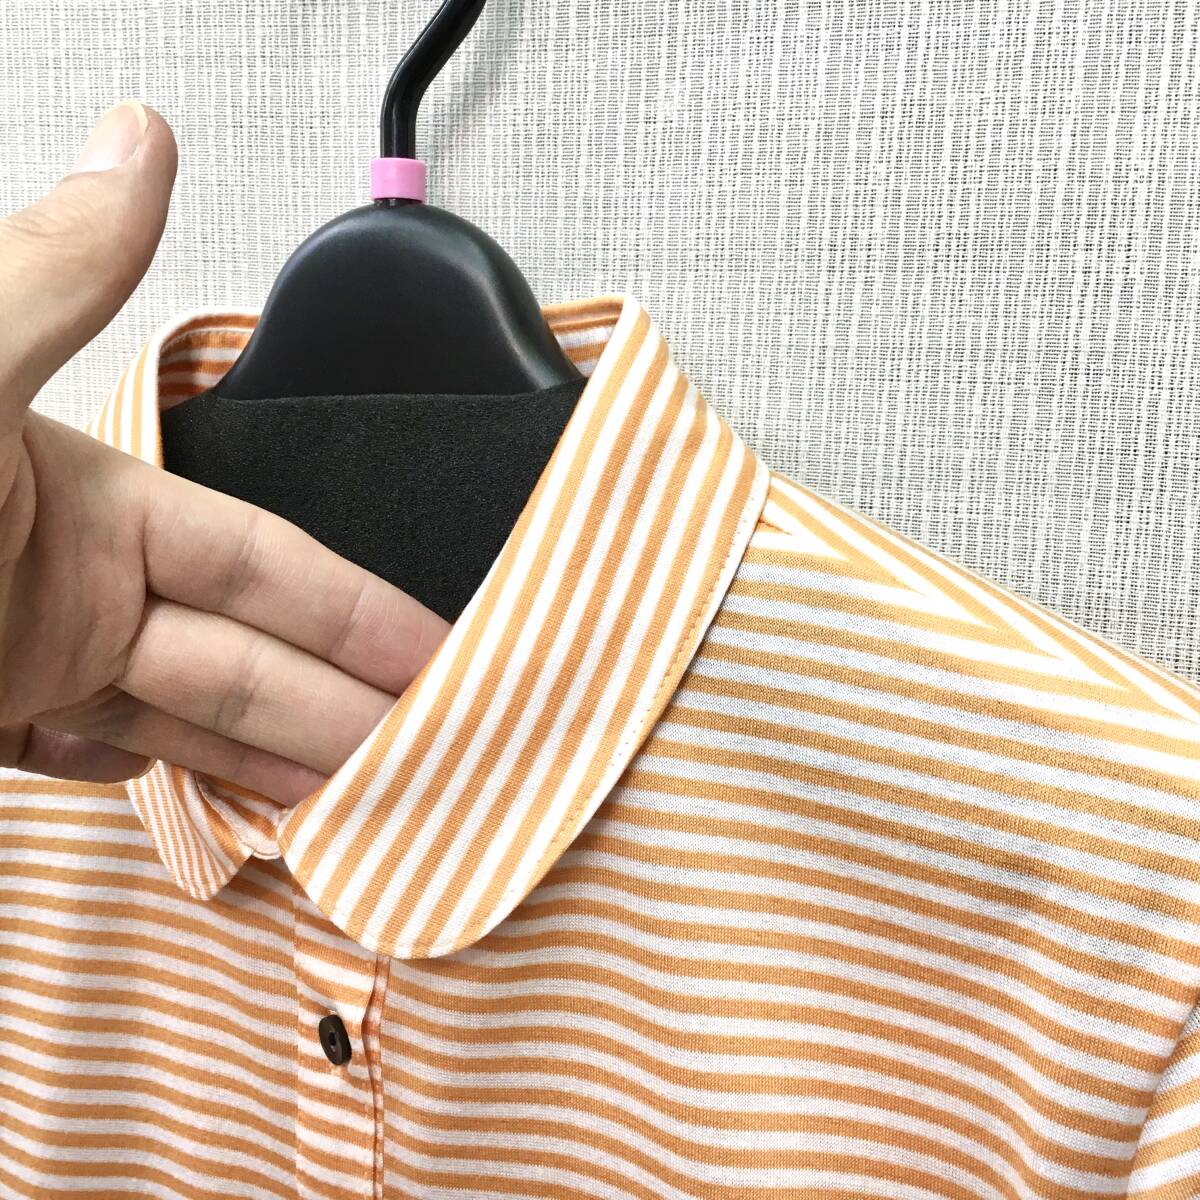 [ новый товар ] сделано в Японии женщина cut and sewn прекрасное качество хлопок 100% 6 минут рукав M размер бесплатная доставка вязаный рубашка-поло женский стиральная машина OK женщина рубашка-поло 